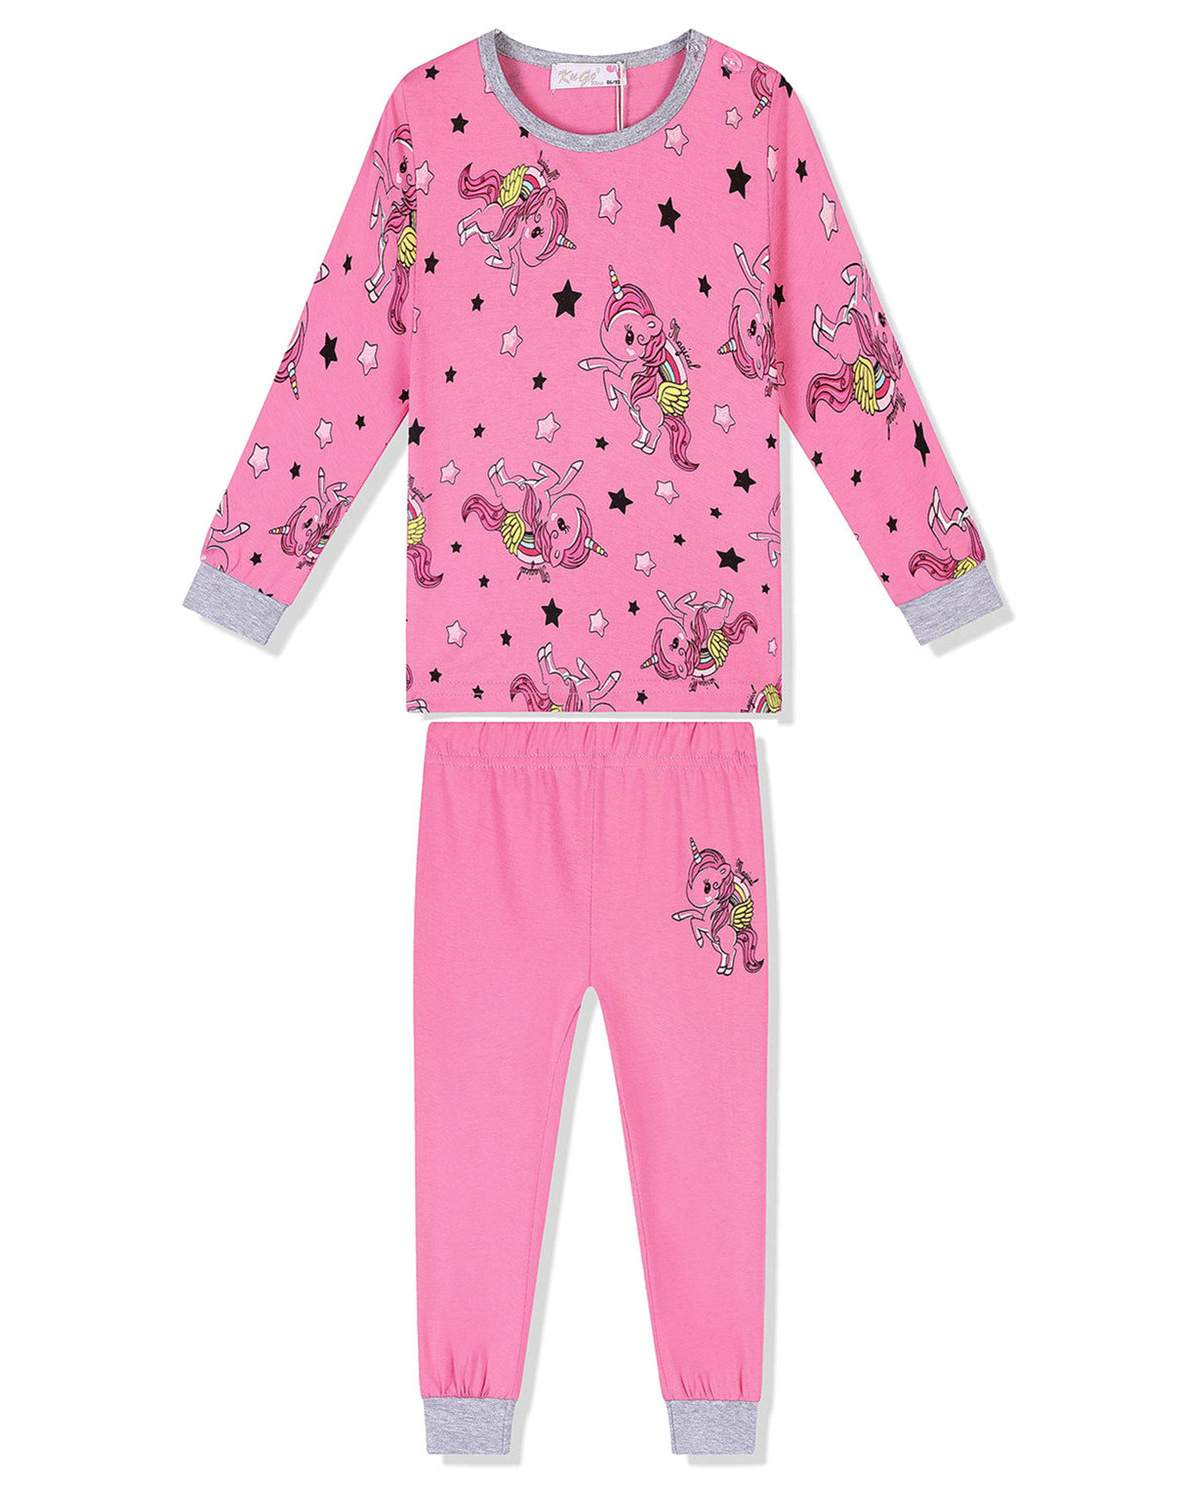 Dívčí pyžamo - KUGO MP1326, sytě růžová Barva: Růžová tmavší, Velikost: 110